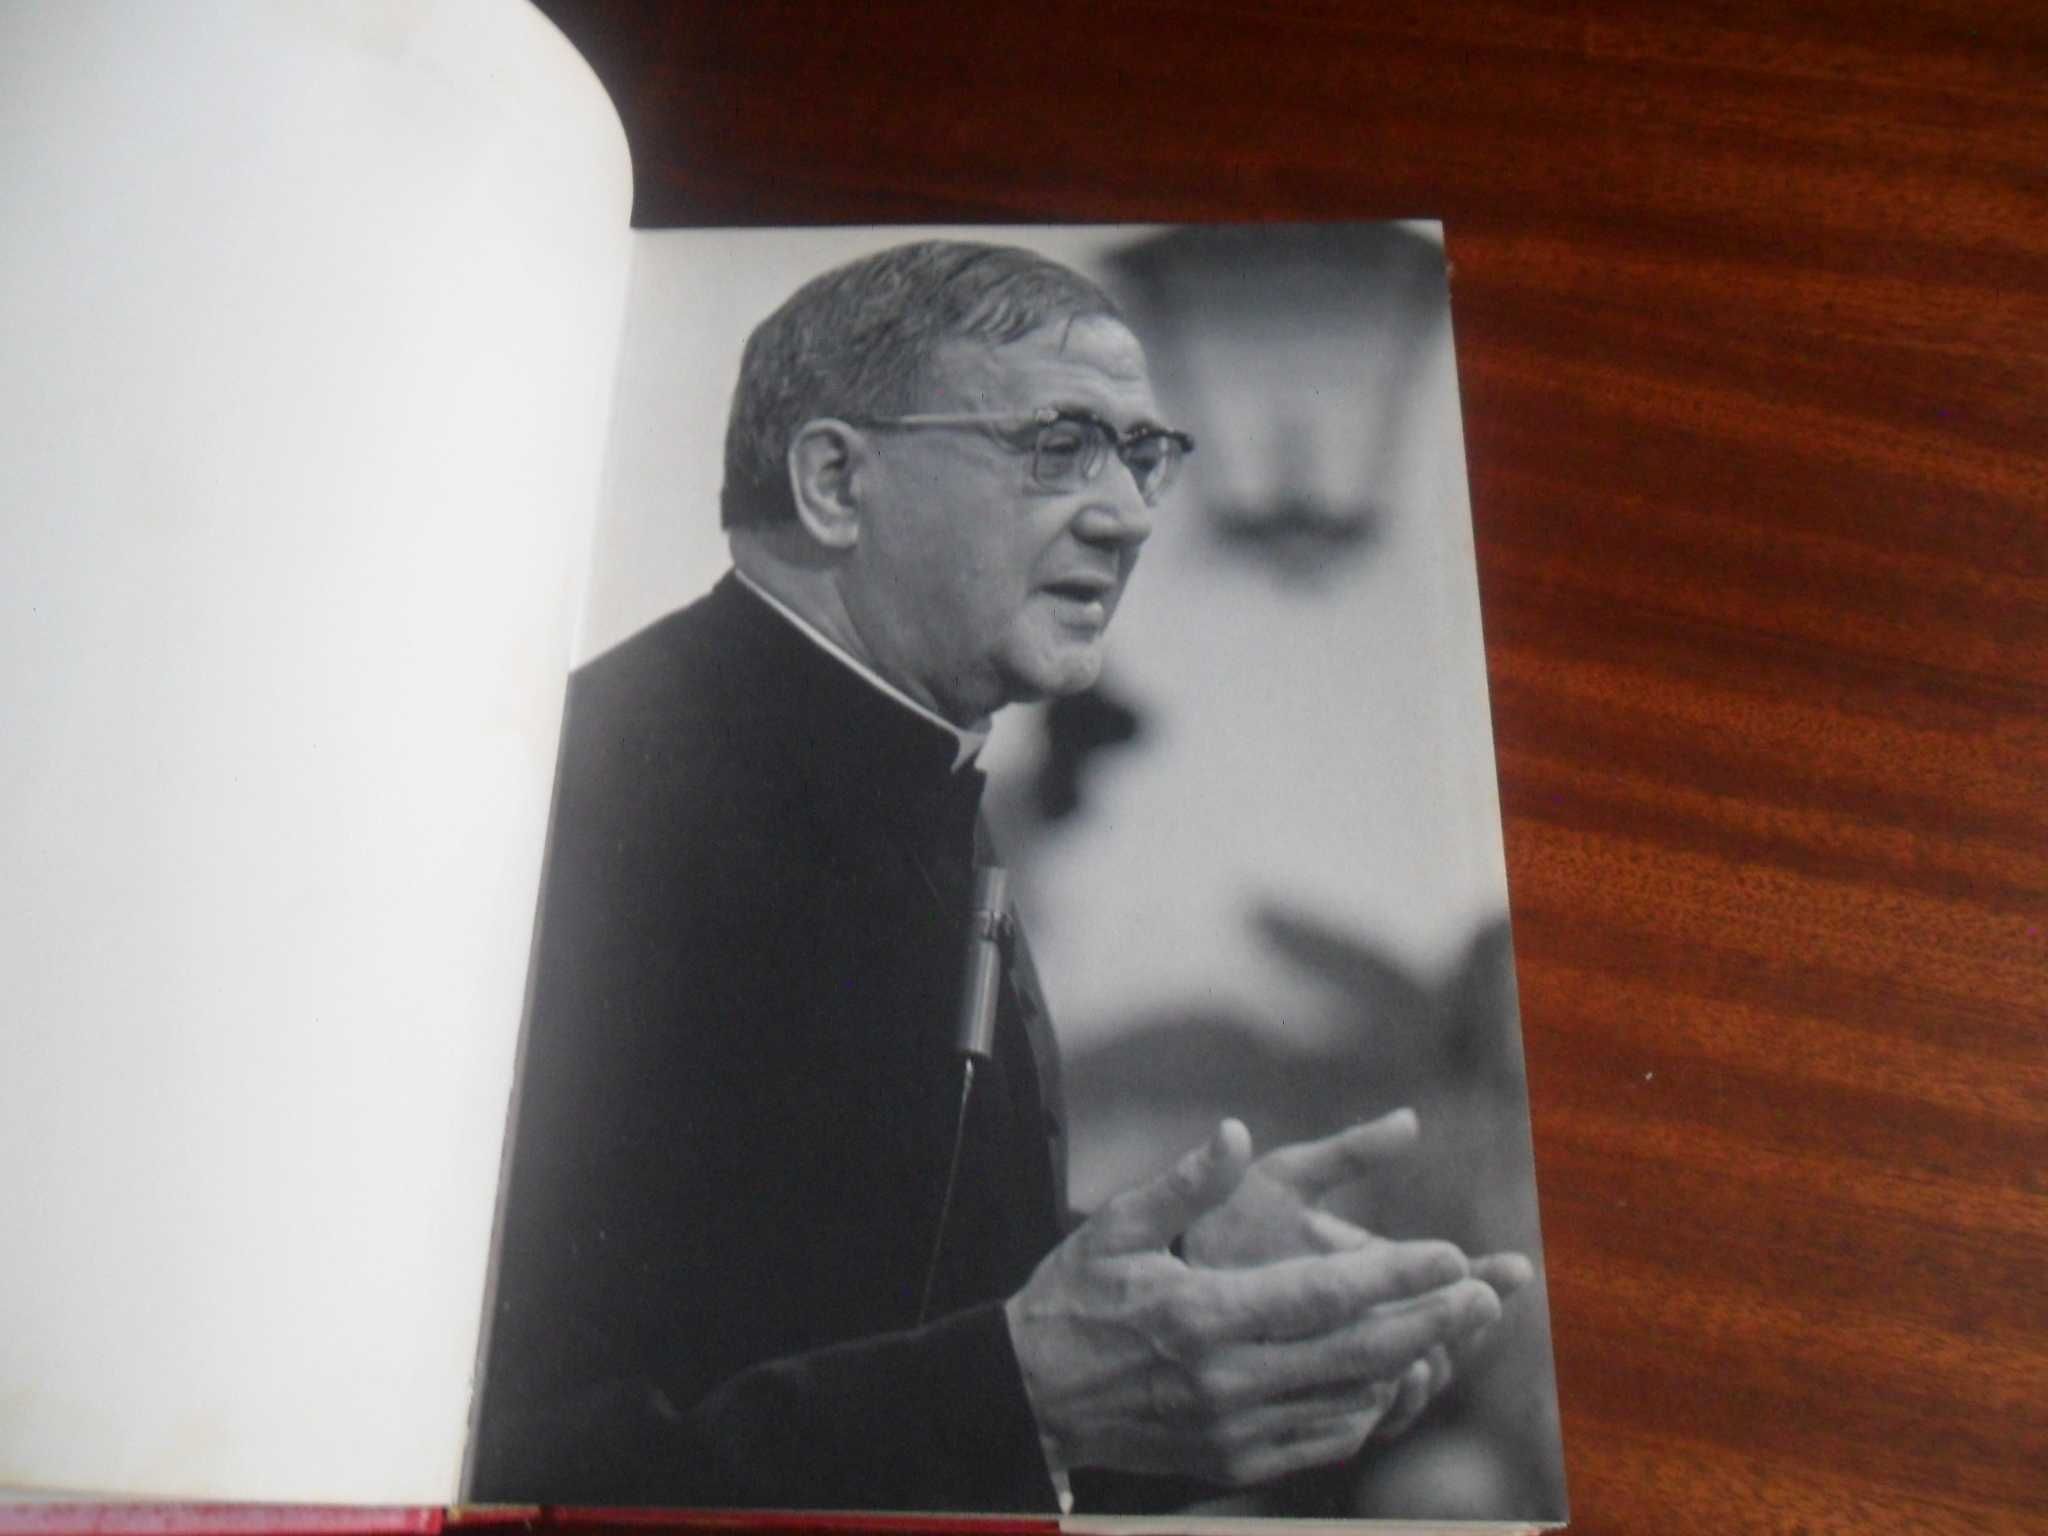 "O Fundador do Opus Dei" de Andrés Vázquez De Prada - 1ª Edição 1989